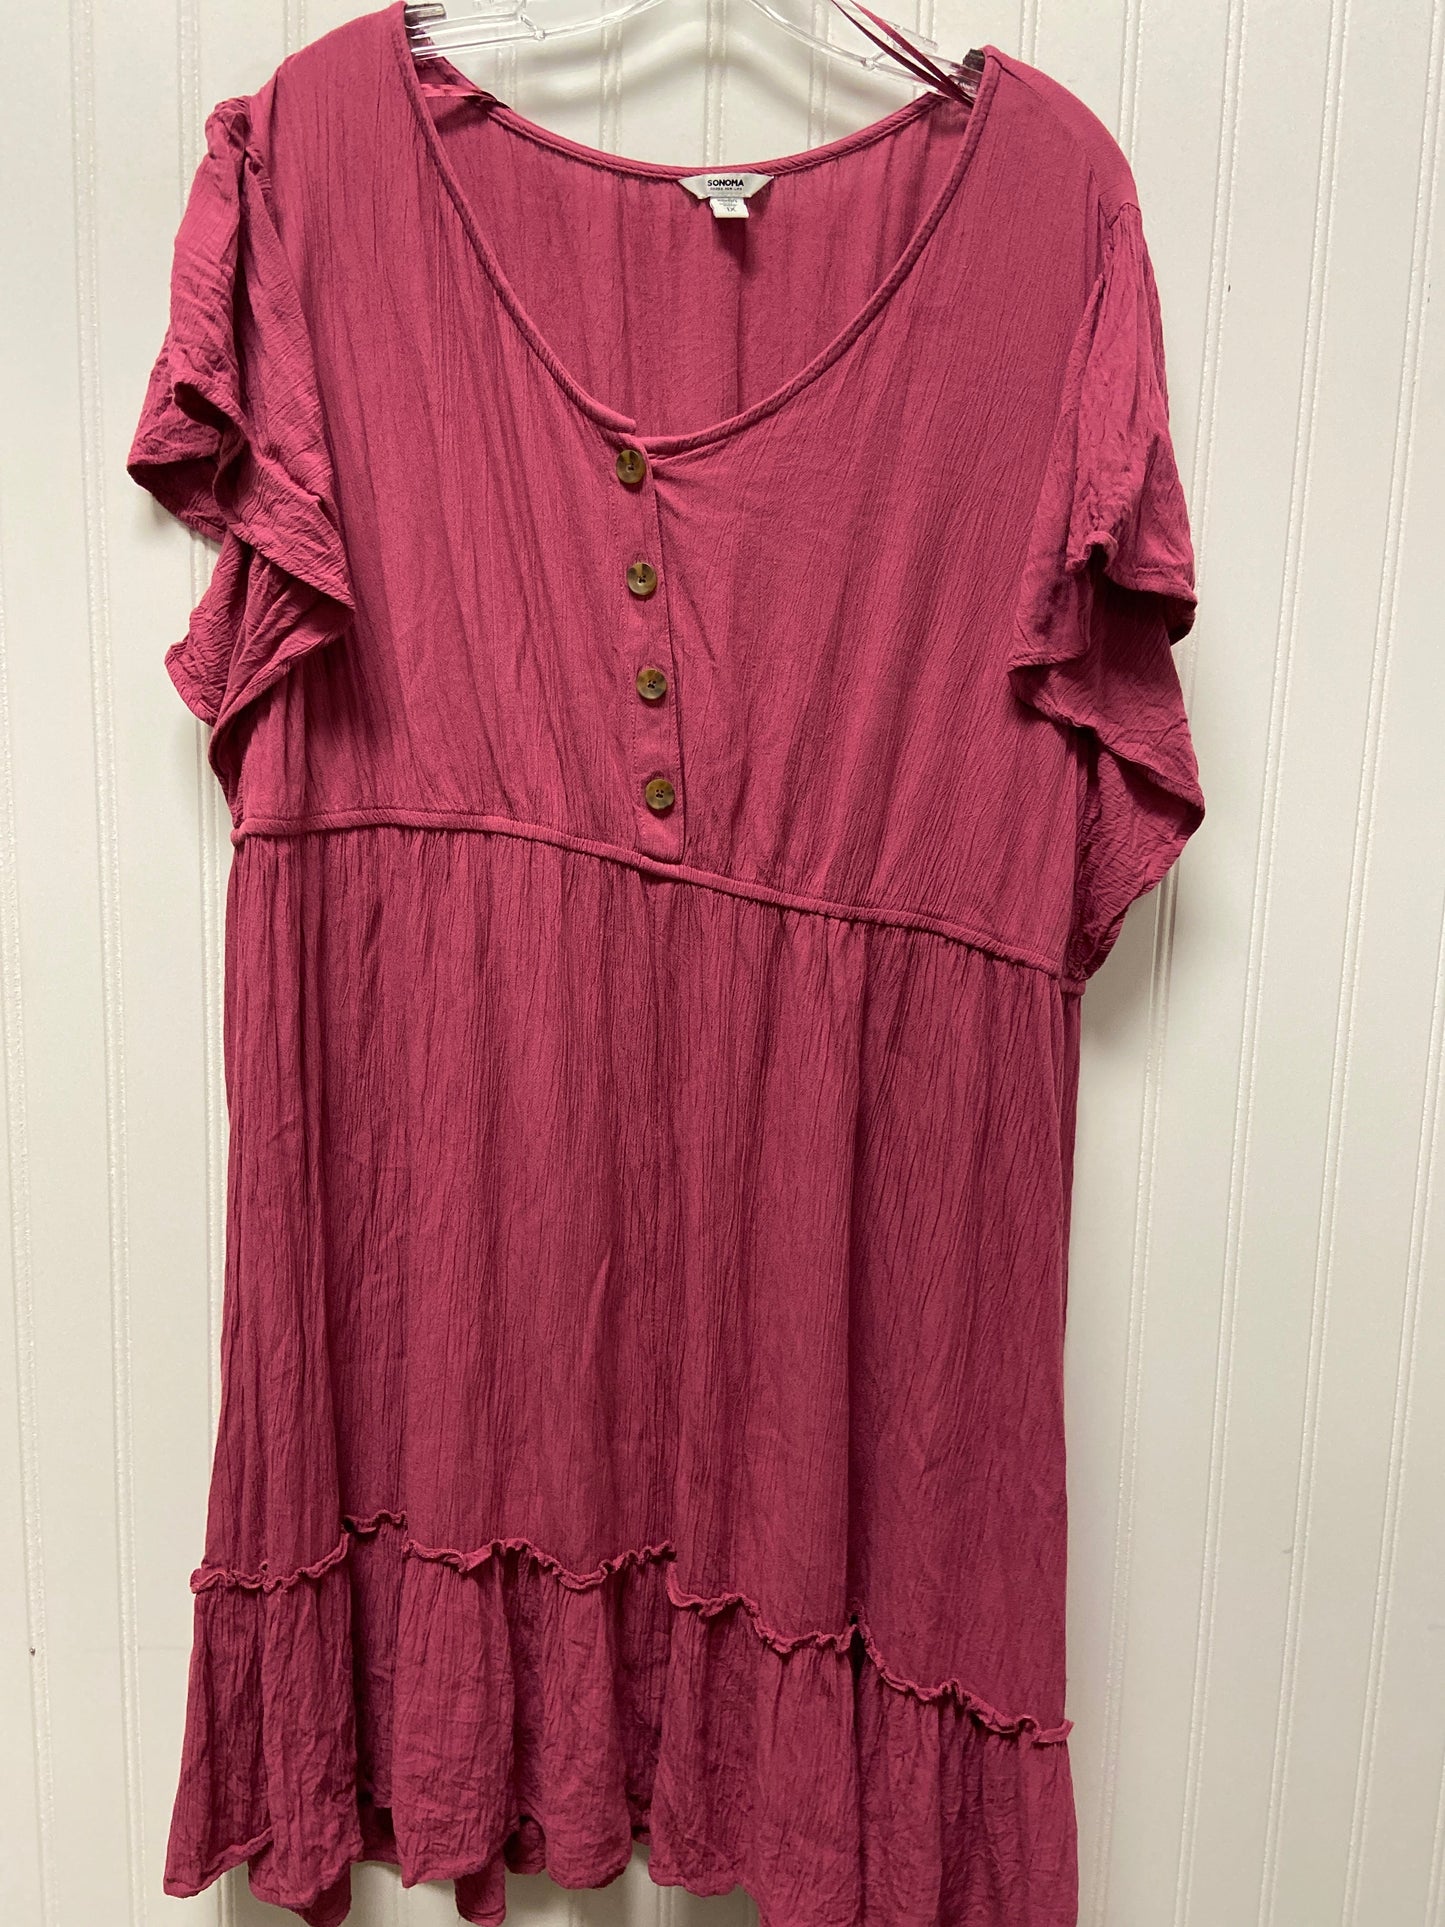 Pink Tunic Short Sleeve Sonoma, Size 2x